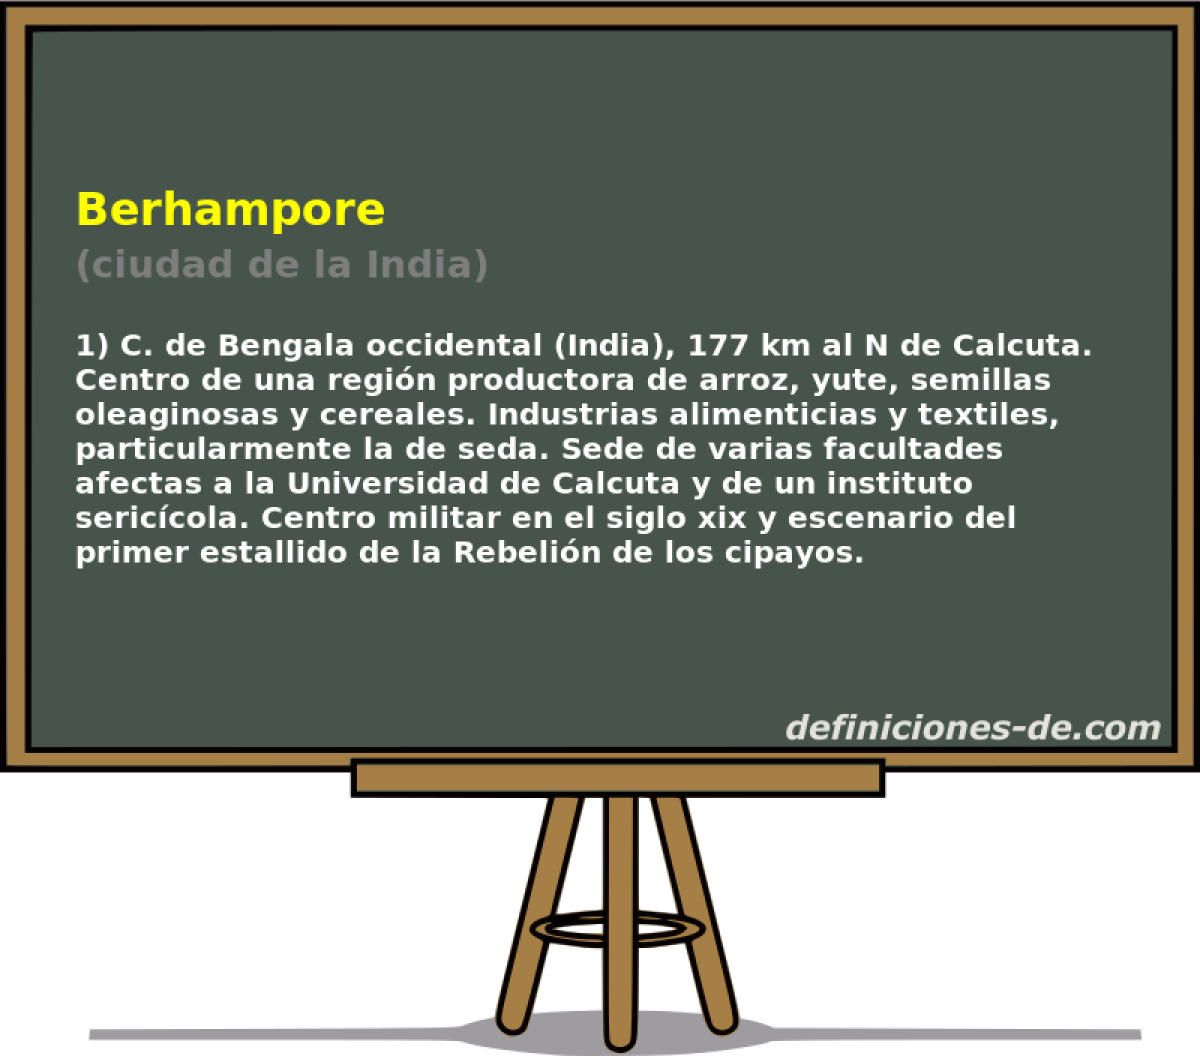 Berhampore (ciudad de la India)